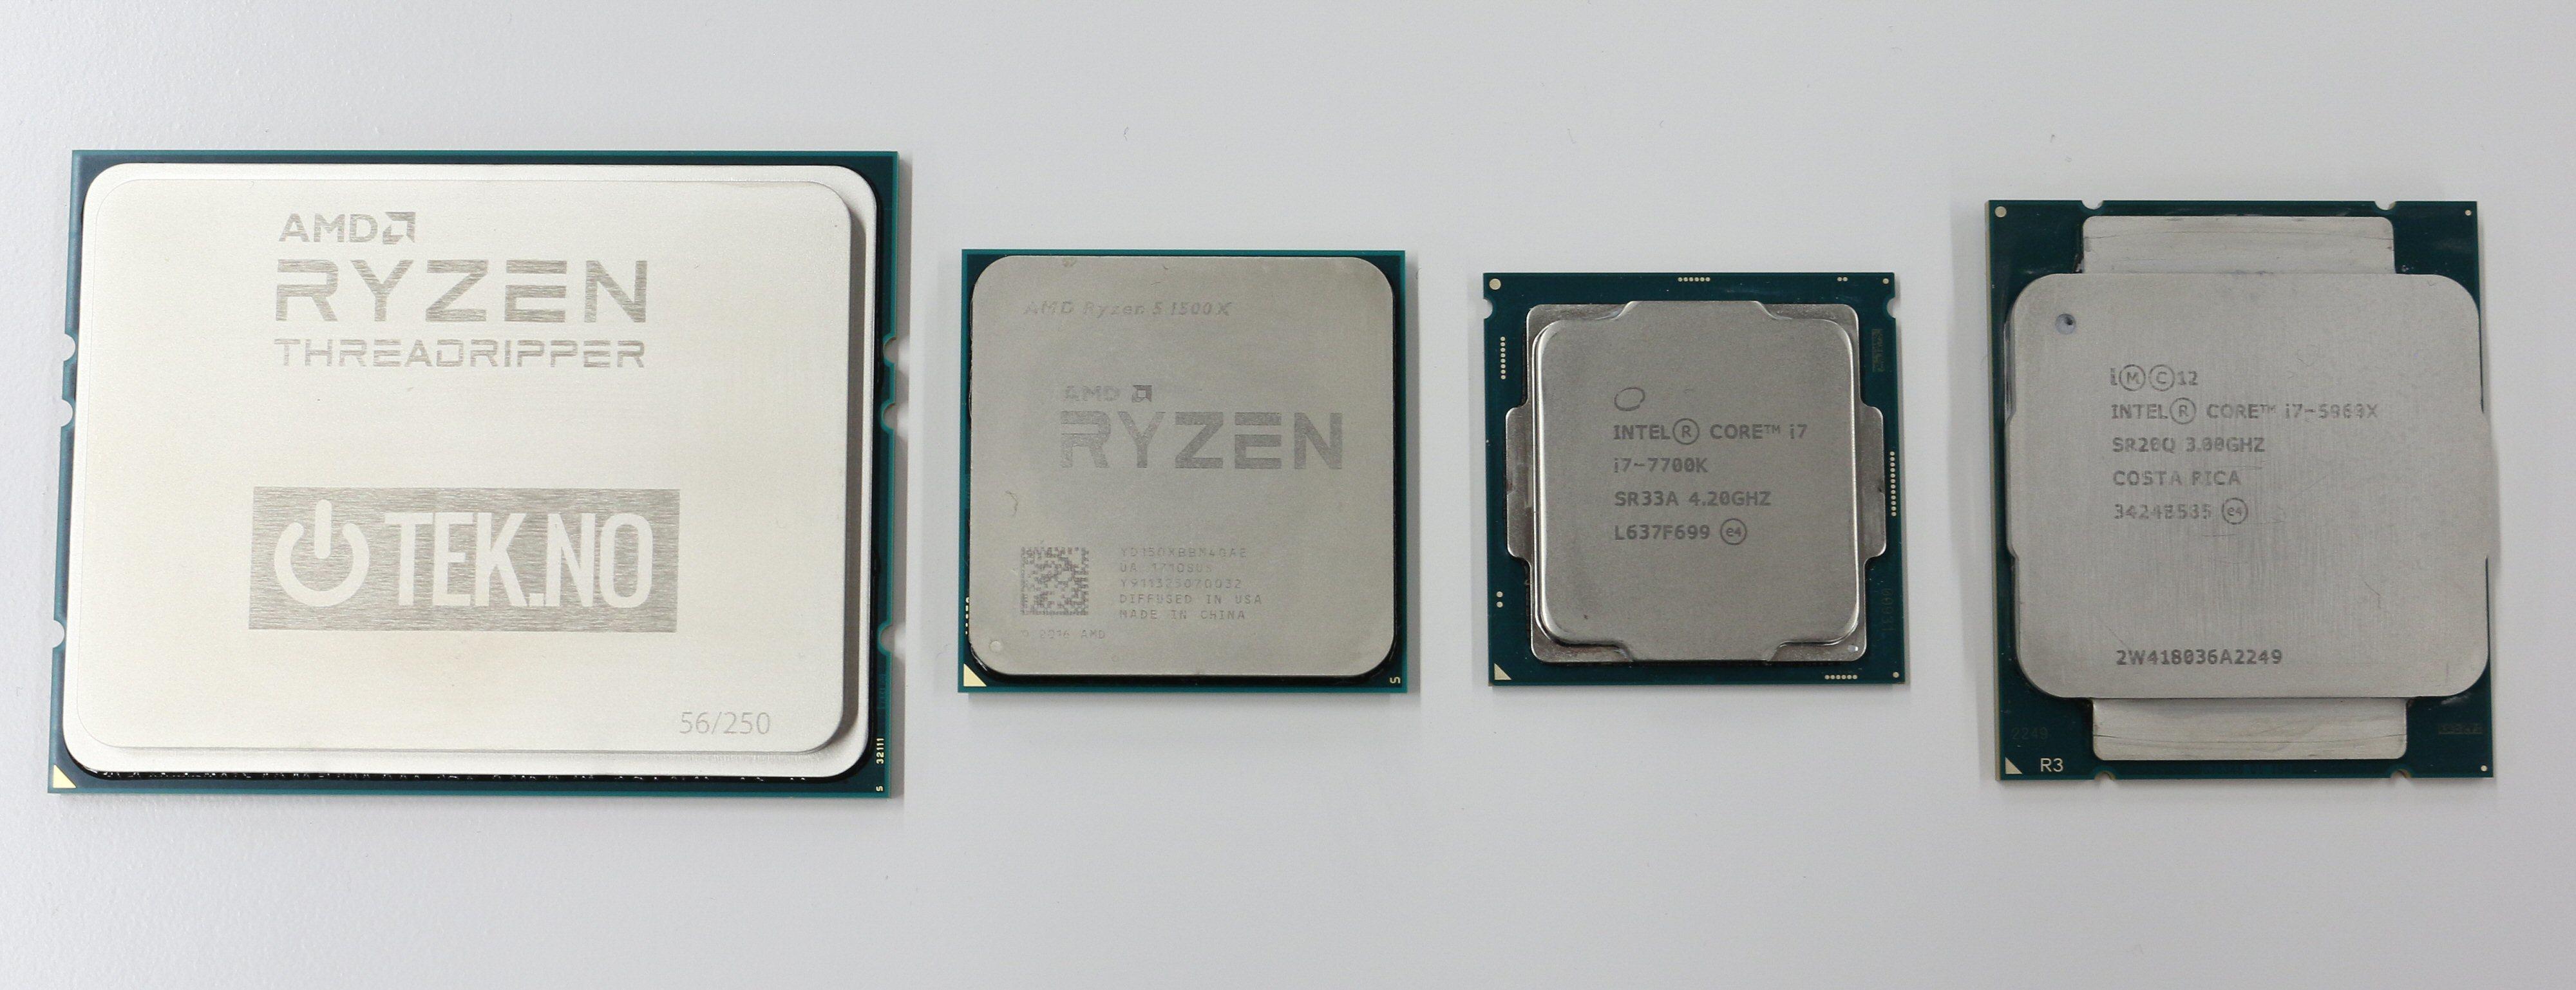 Forskjeller i størrelse. Fra venstre: AMD Ryzen Threadripper, AMD Ryzen, Intel Kaby Lake, Intel Haswell-E.